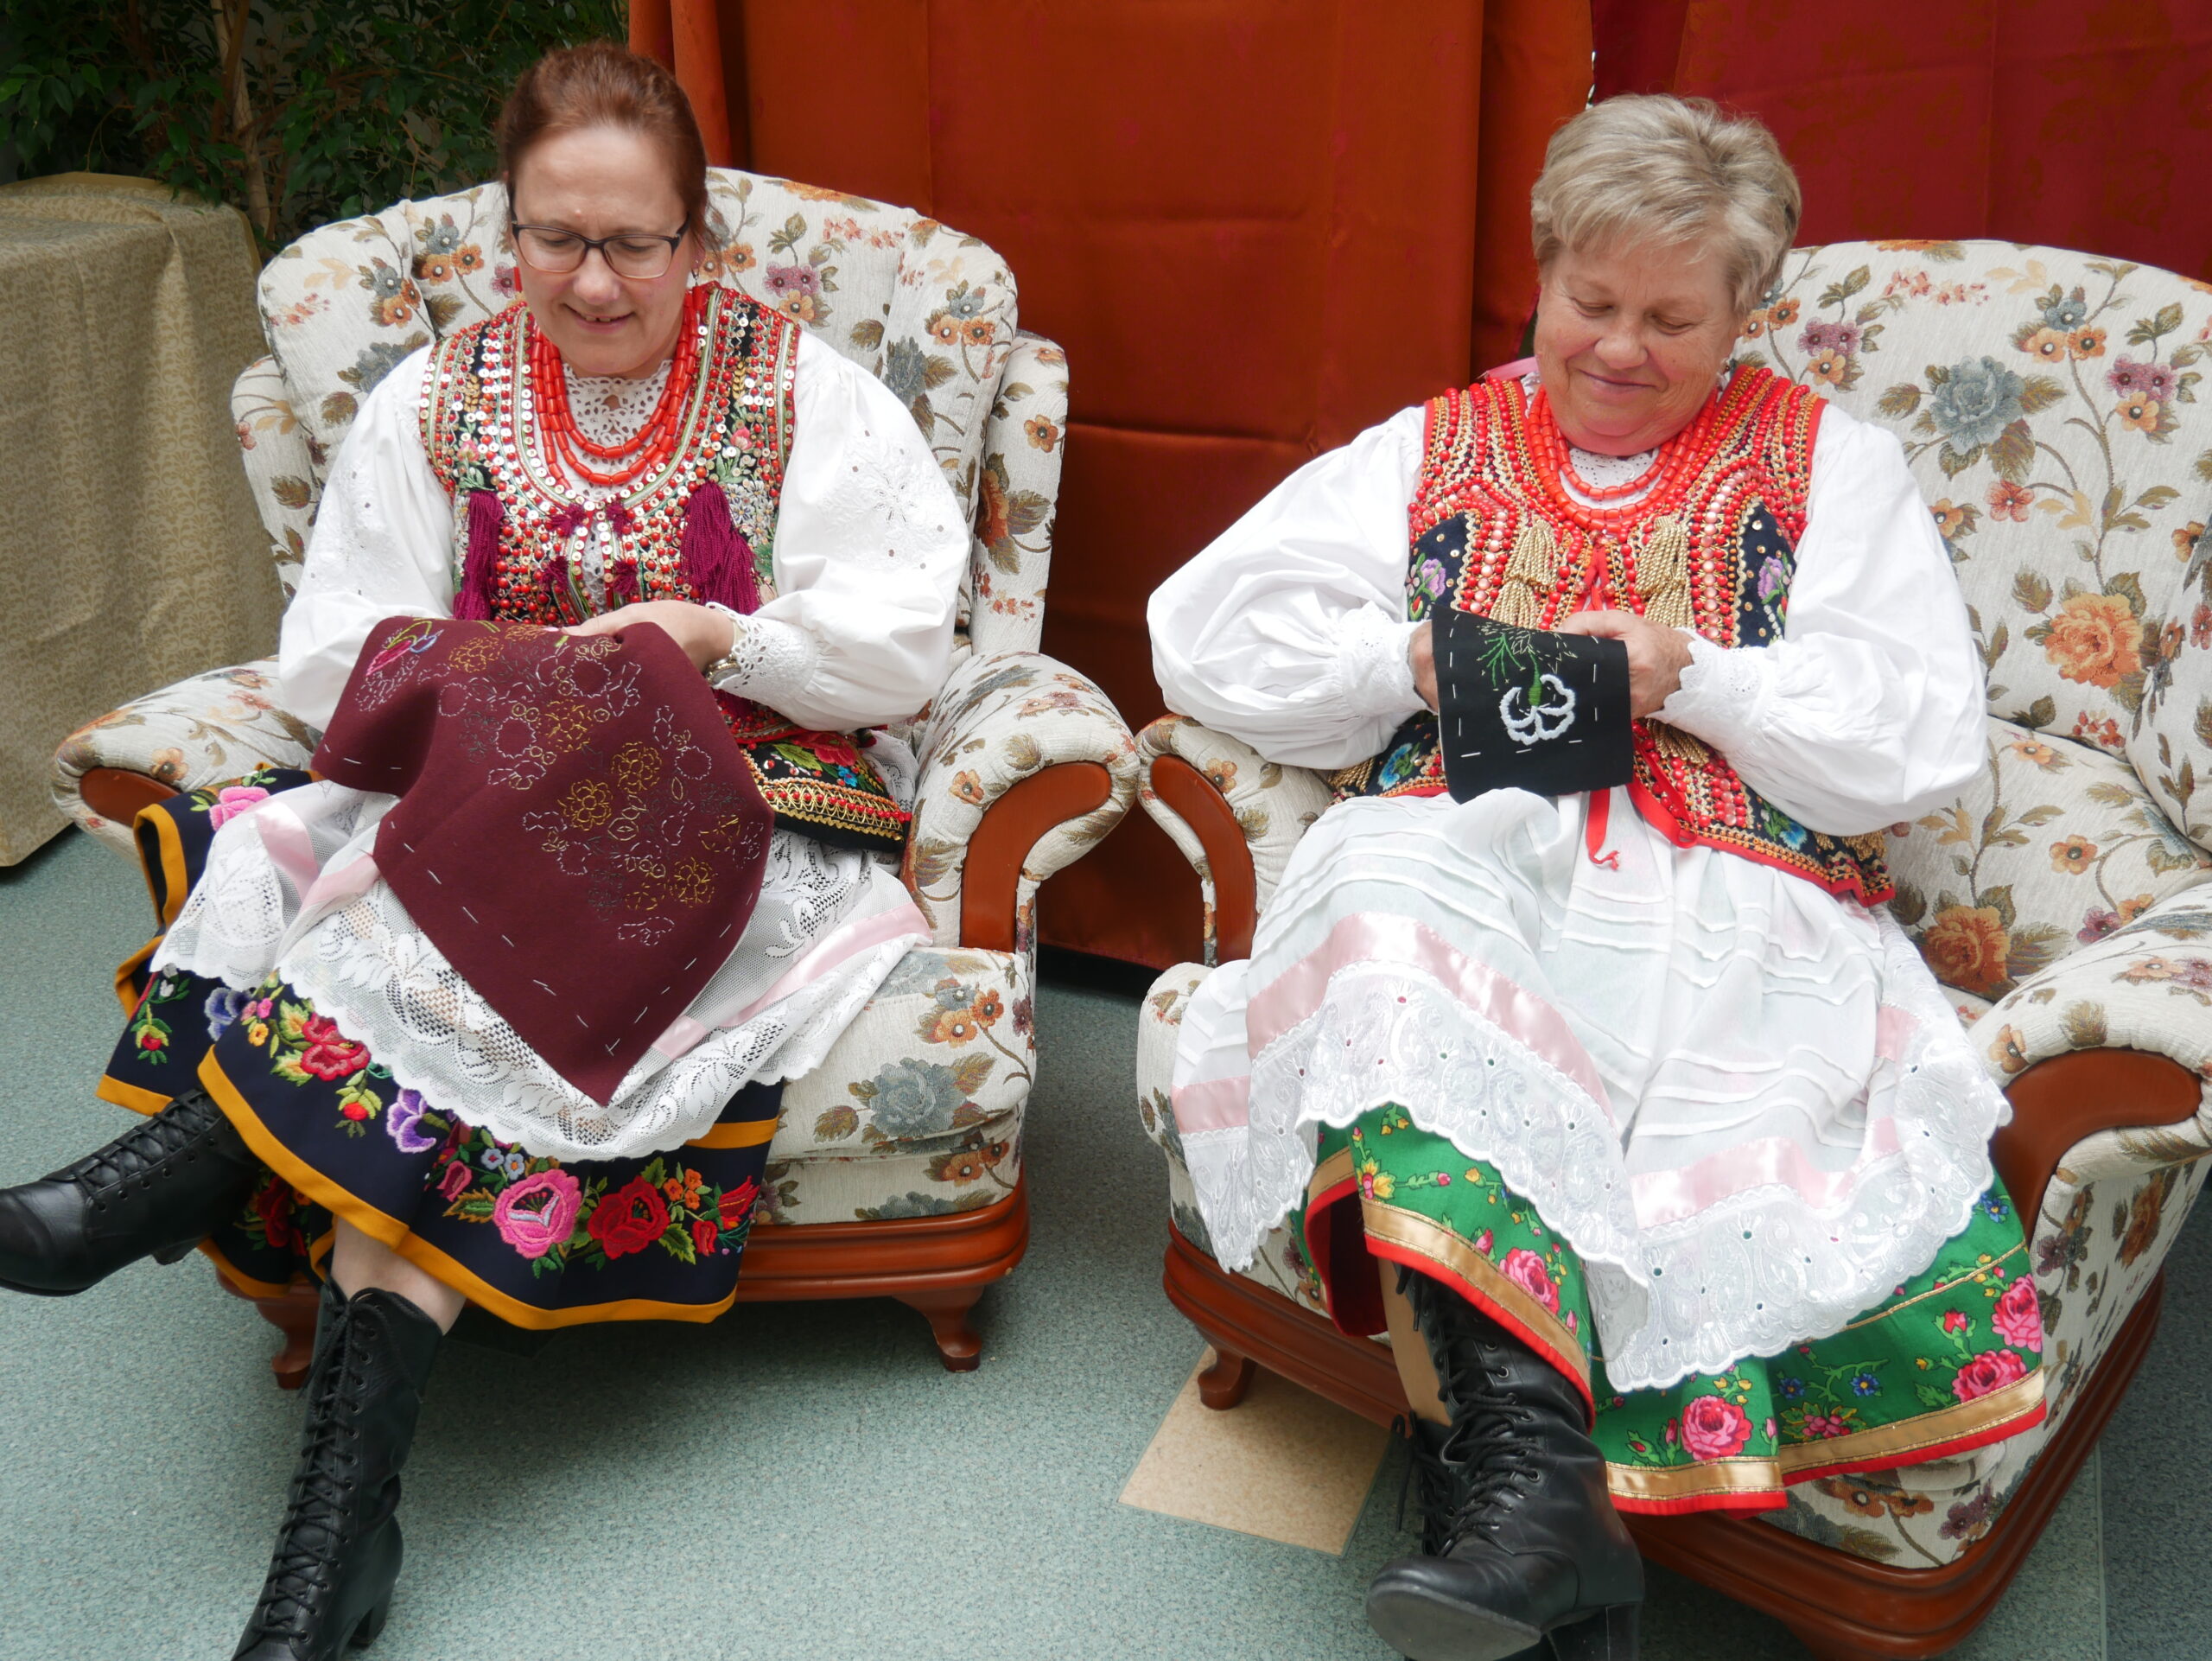 na zdjeciu widoczne kobiety w strojach krakowskich siedzące na fotelach